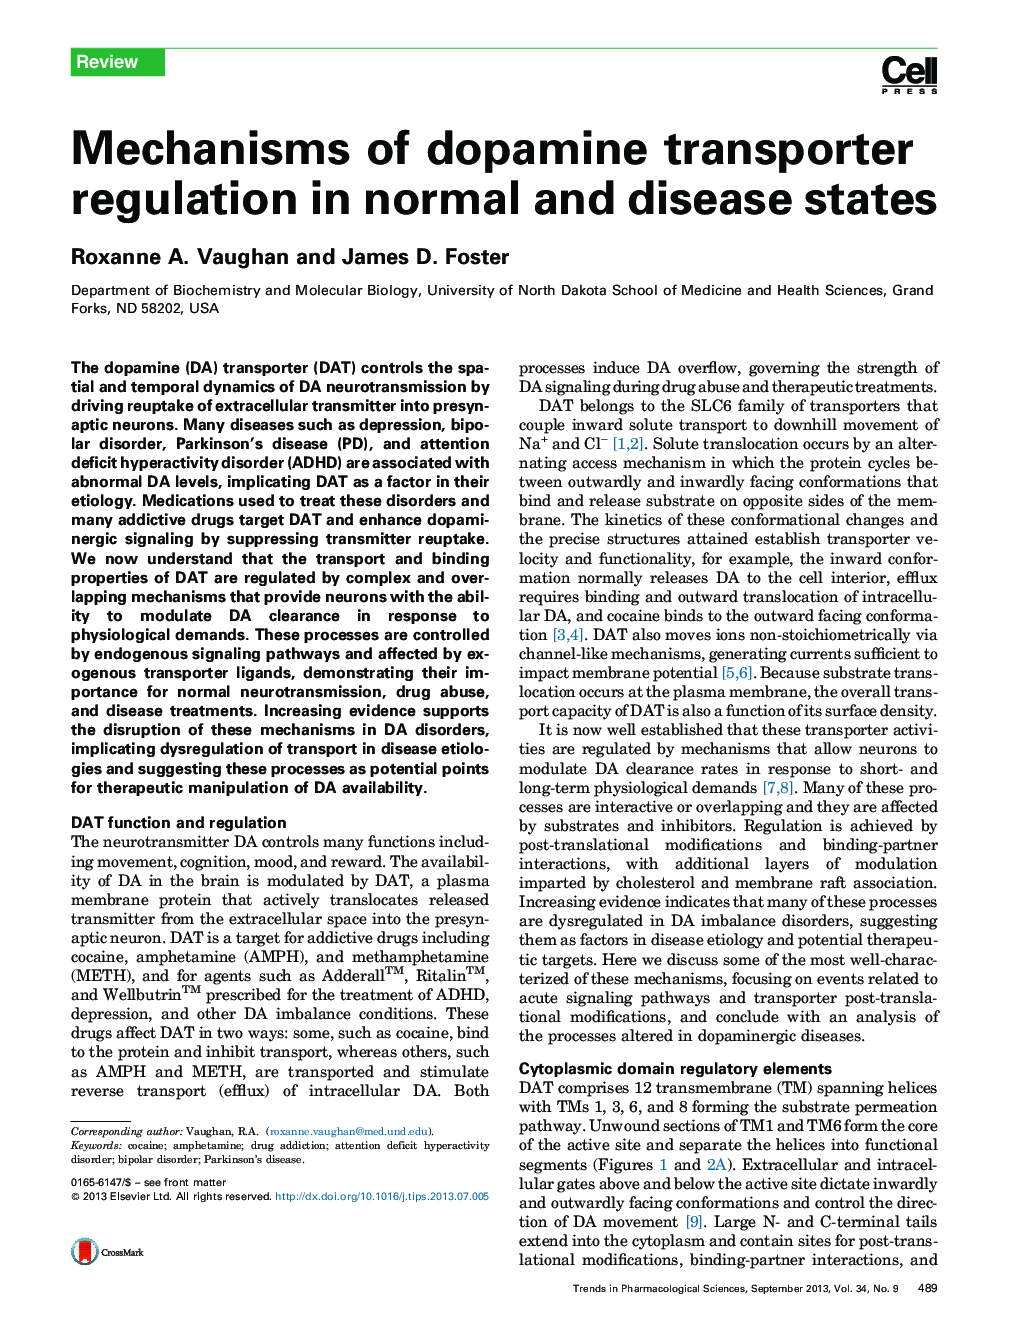 مکانیسم تنظیم مقررات انتقال دهنده دوپامین در حالت های طبیعی و بیماری 